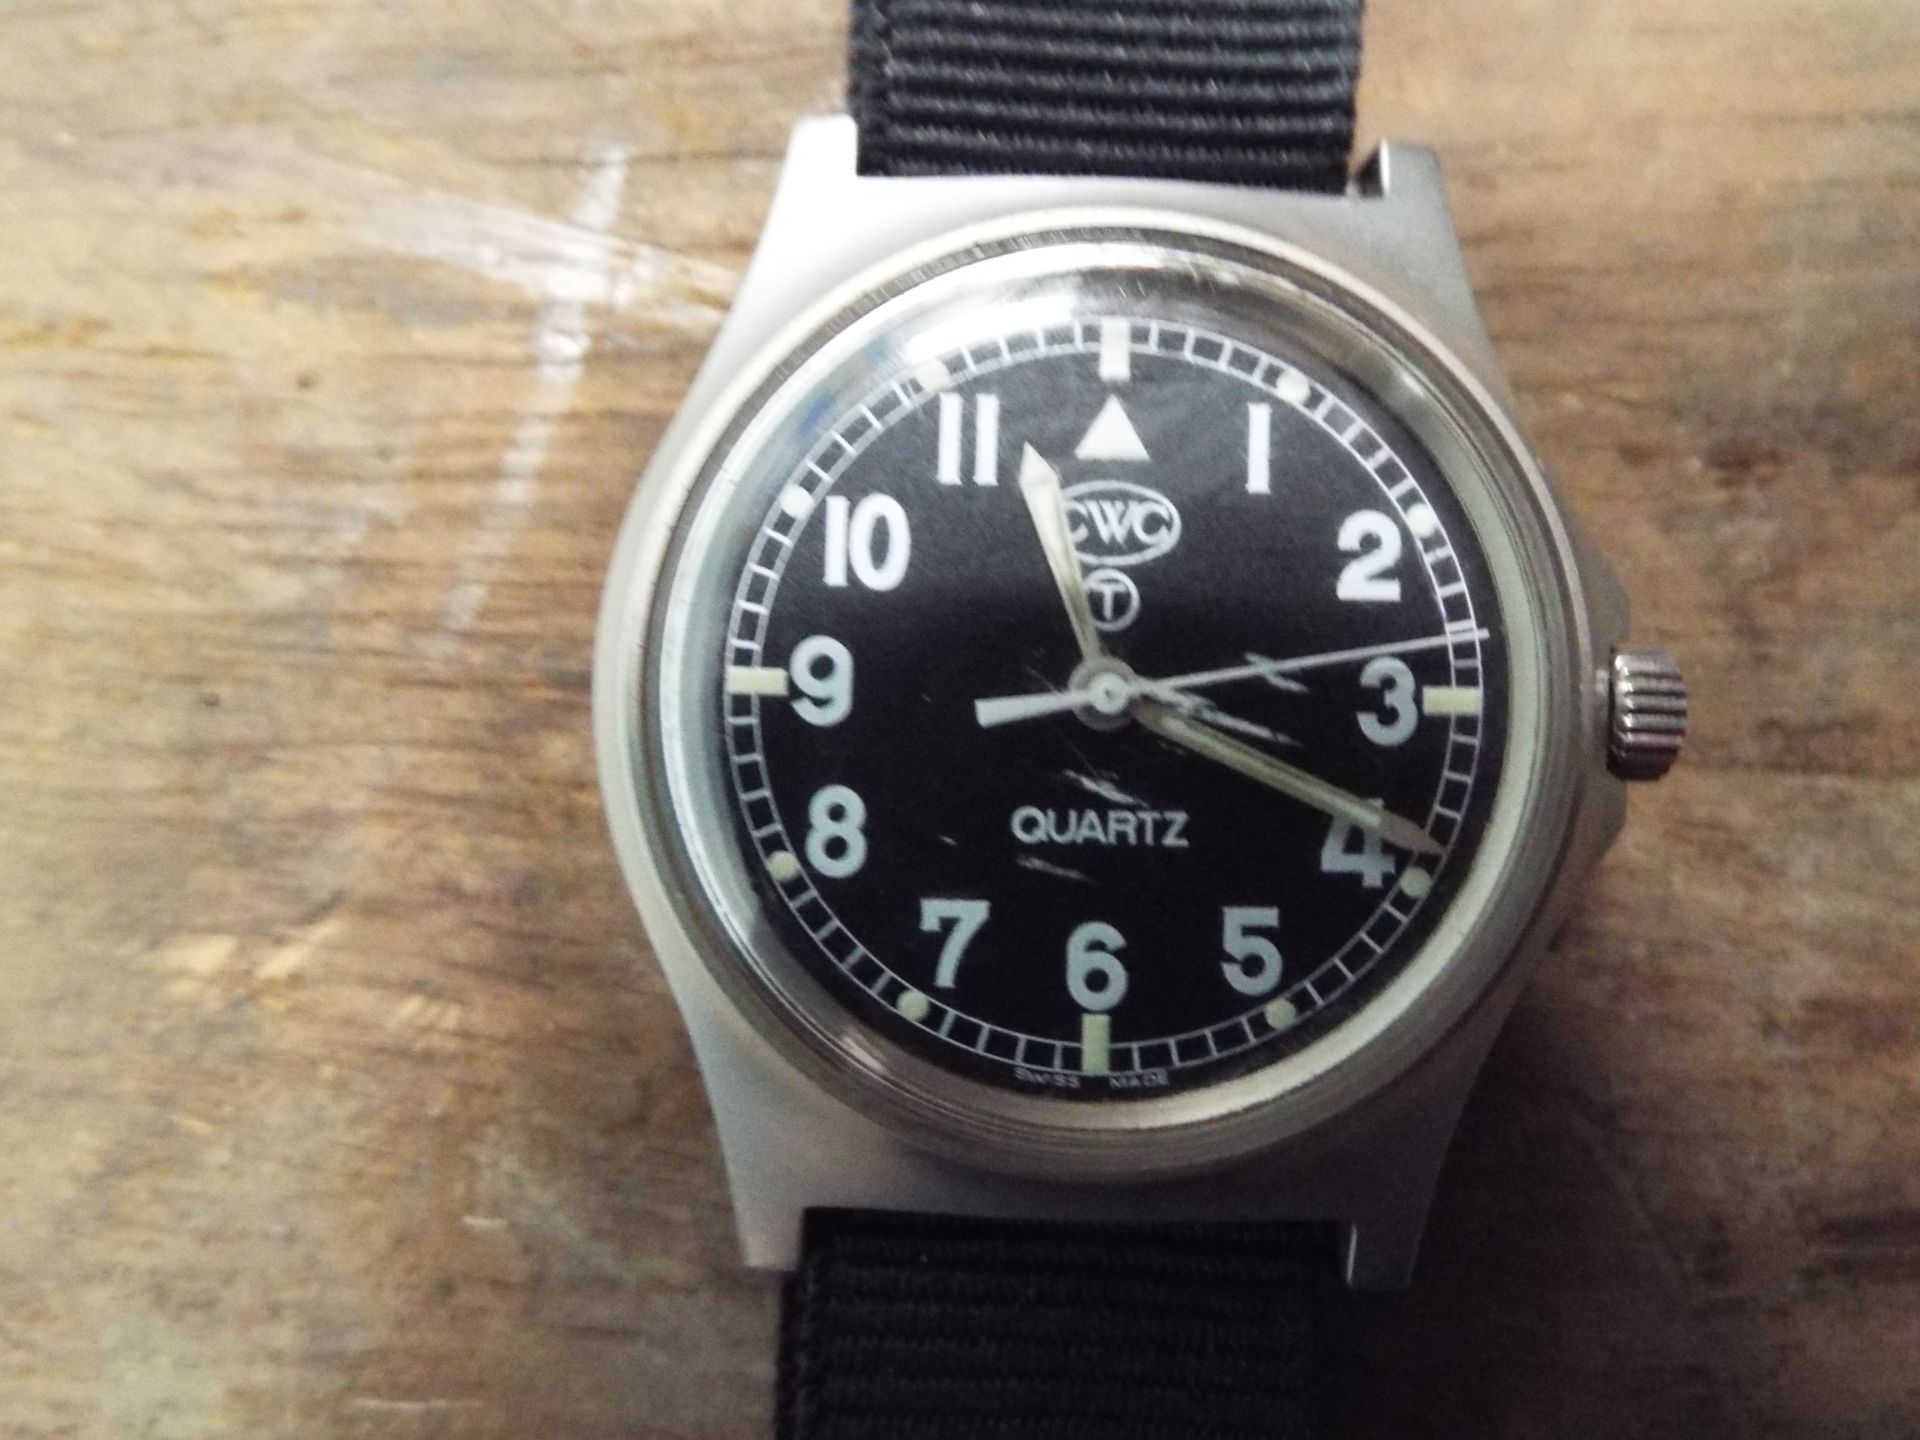 Very Rare Genuine British Army, Waterproof CWC Quartz Wrist Watch - Image 2 of 6